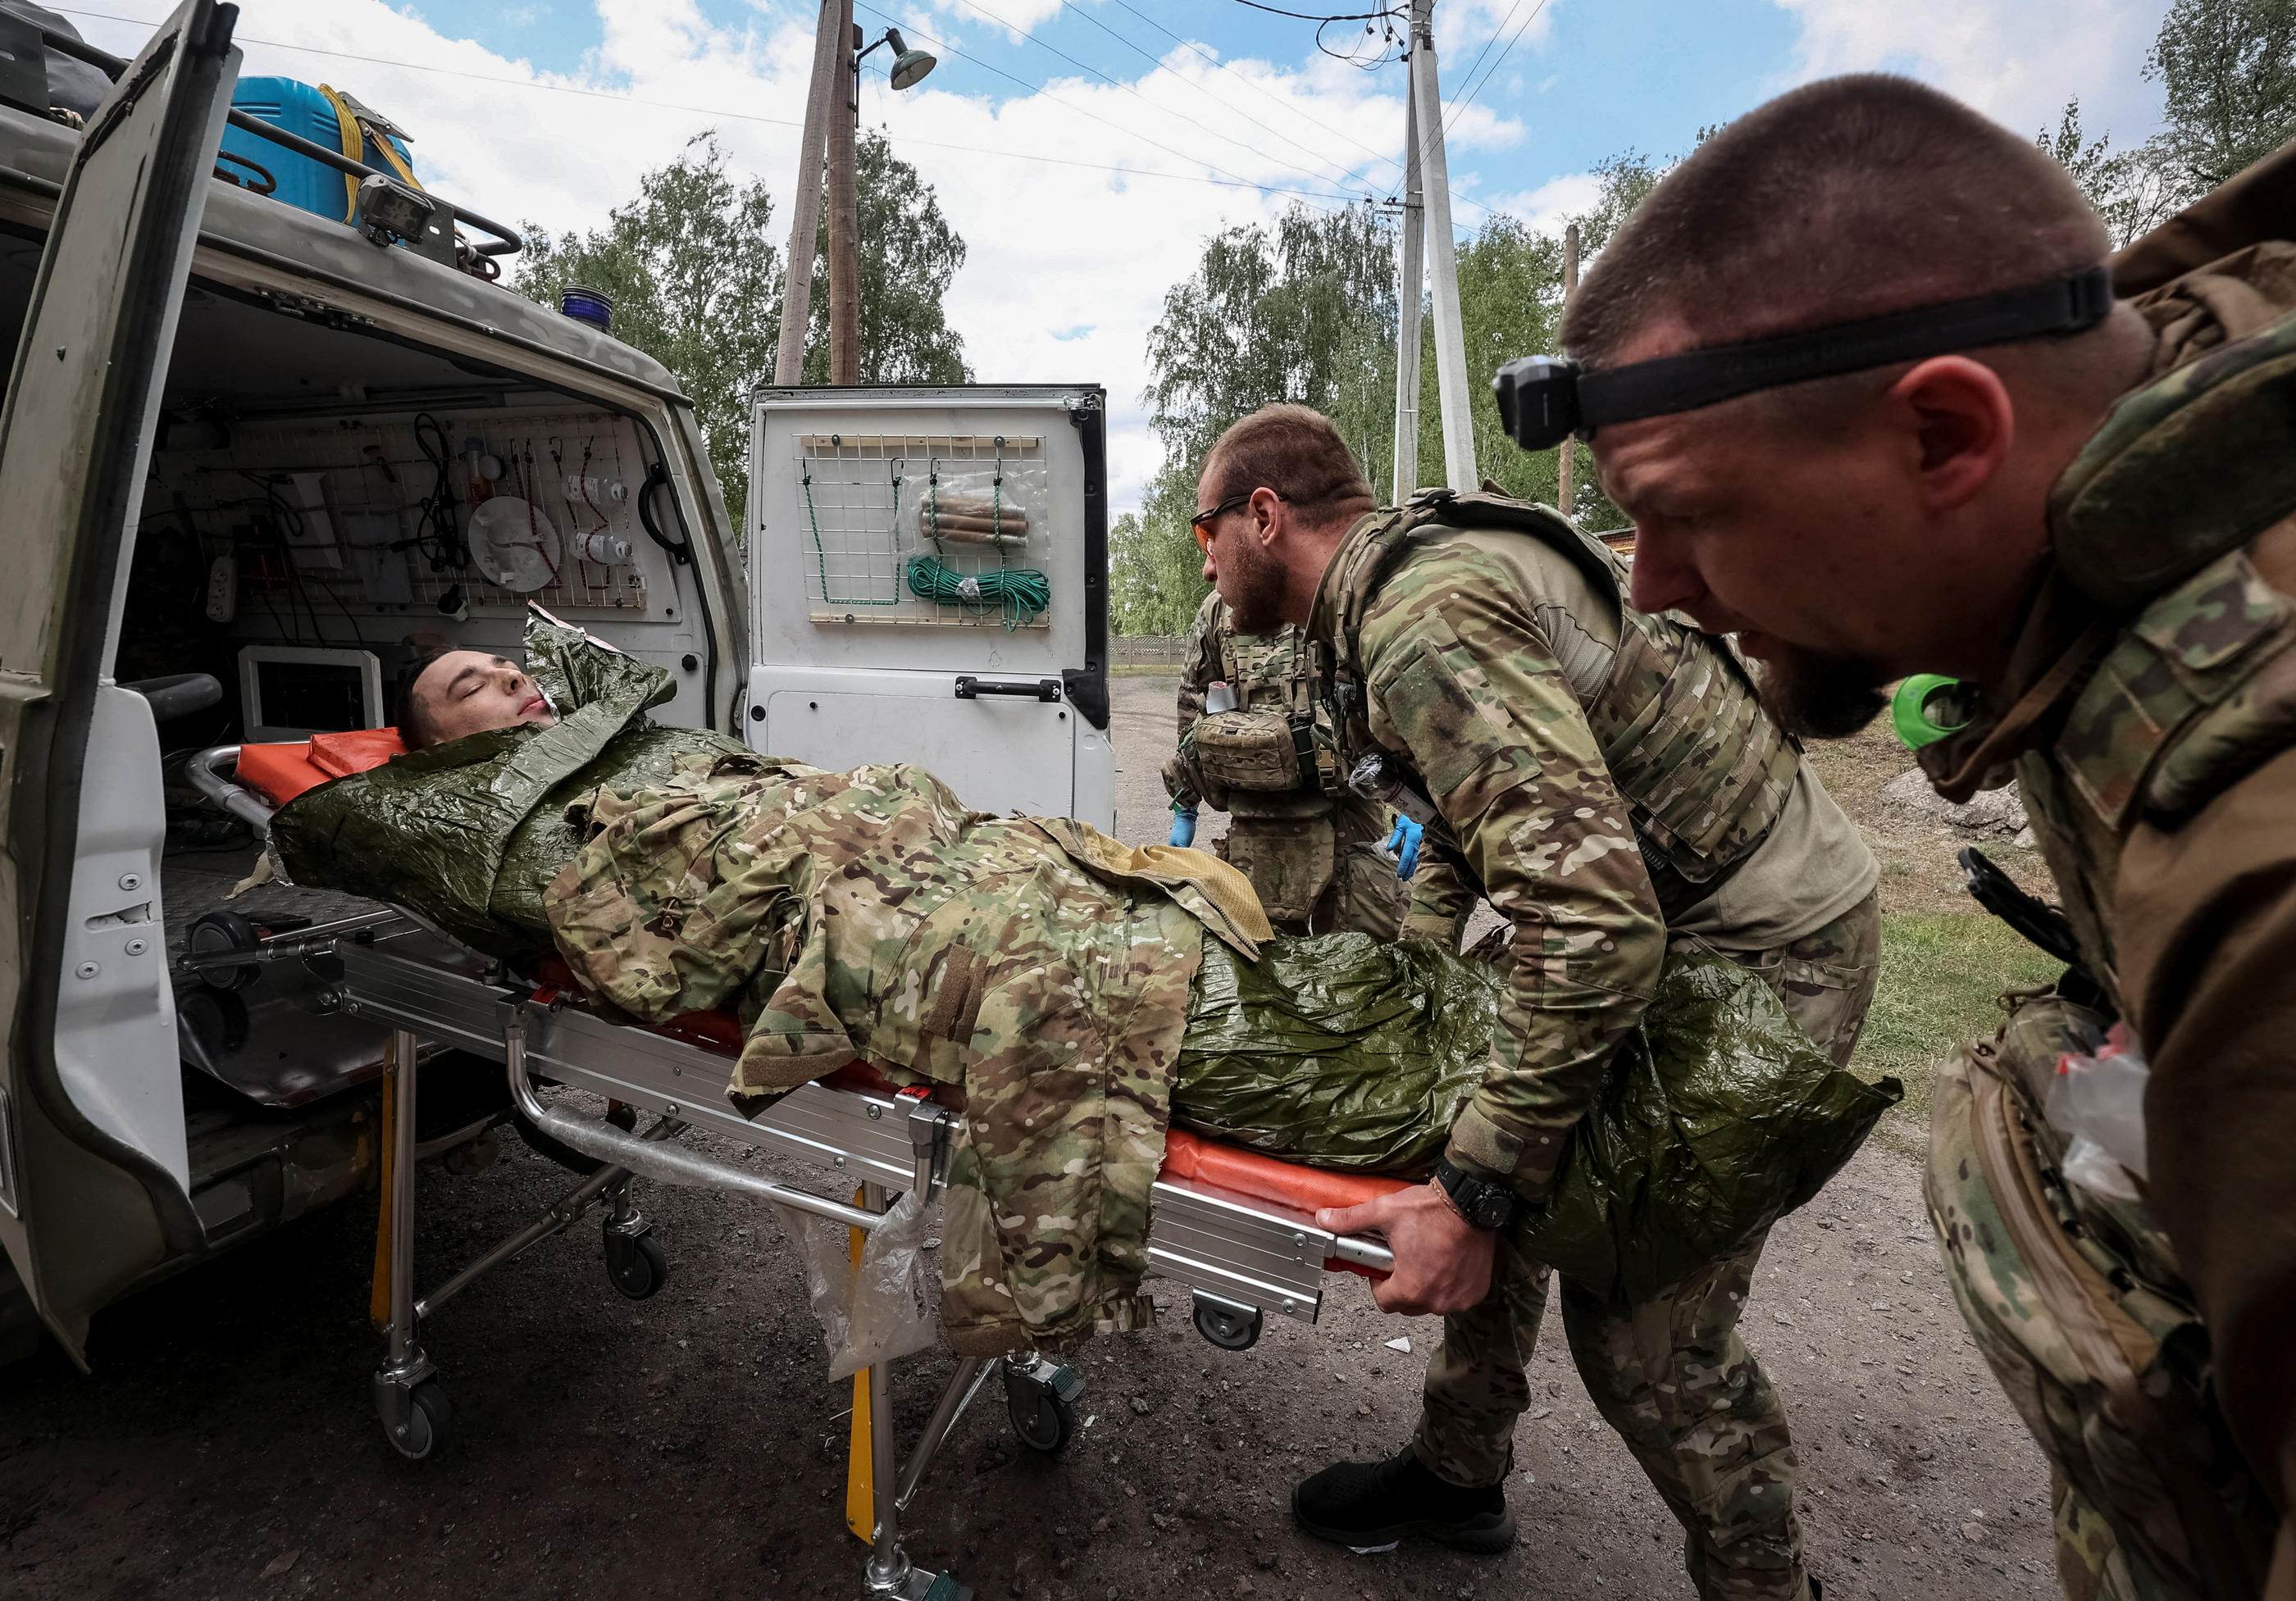 Des brancardiers de l'armée ukrainienne transportent un soldat blessé, dimanche dans la région de Kharkiv. REUTERS/Vyacheslav Madiyevskyy